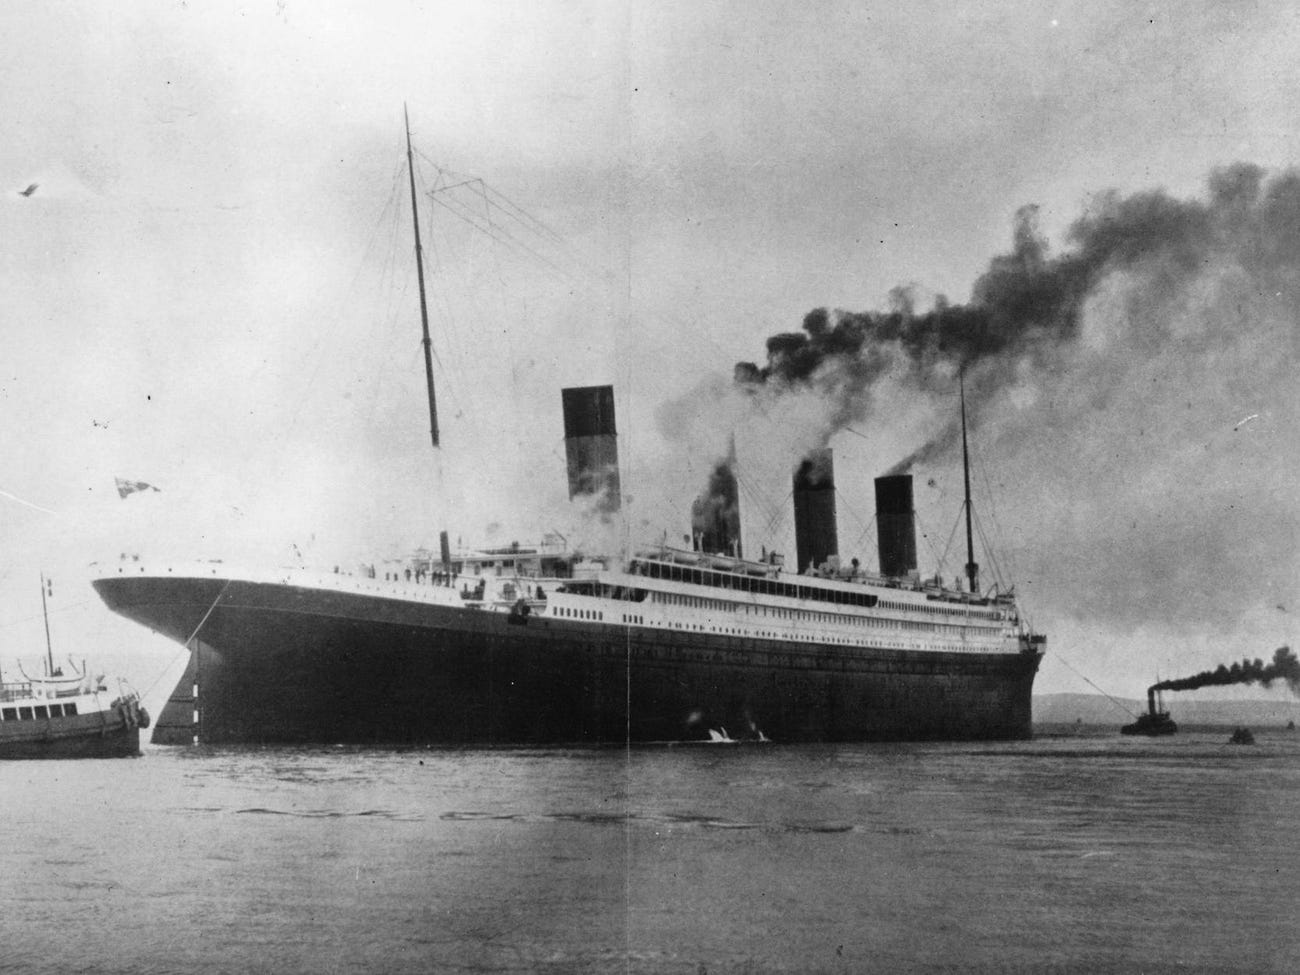 Câu chuyện của người sống sót cuối cùng sau thảm kịch Titanic: Lên tàu khi mới 9 tuần tuổi, từ chối xem phim vì lý do đau lòng - Ảnh 1.